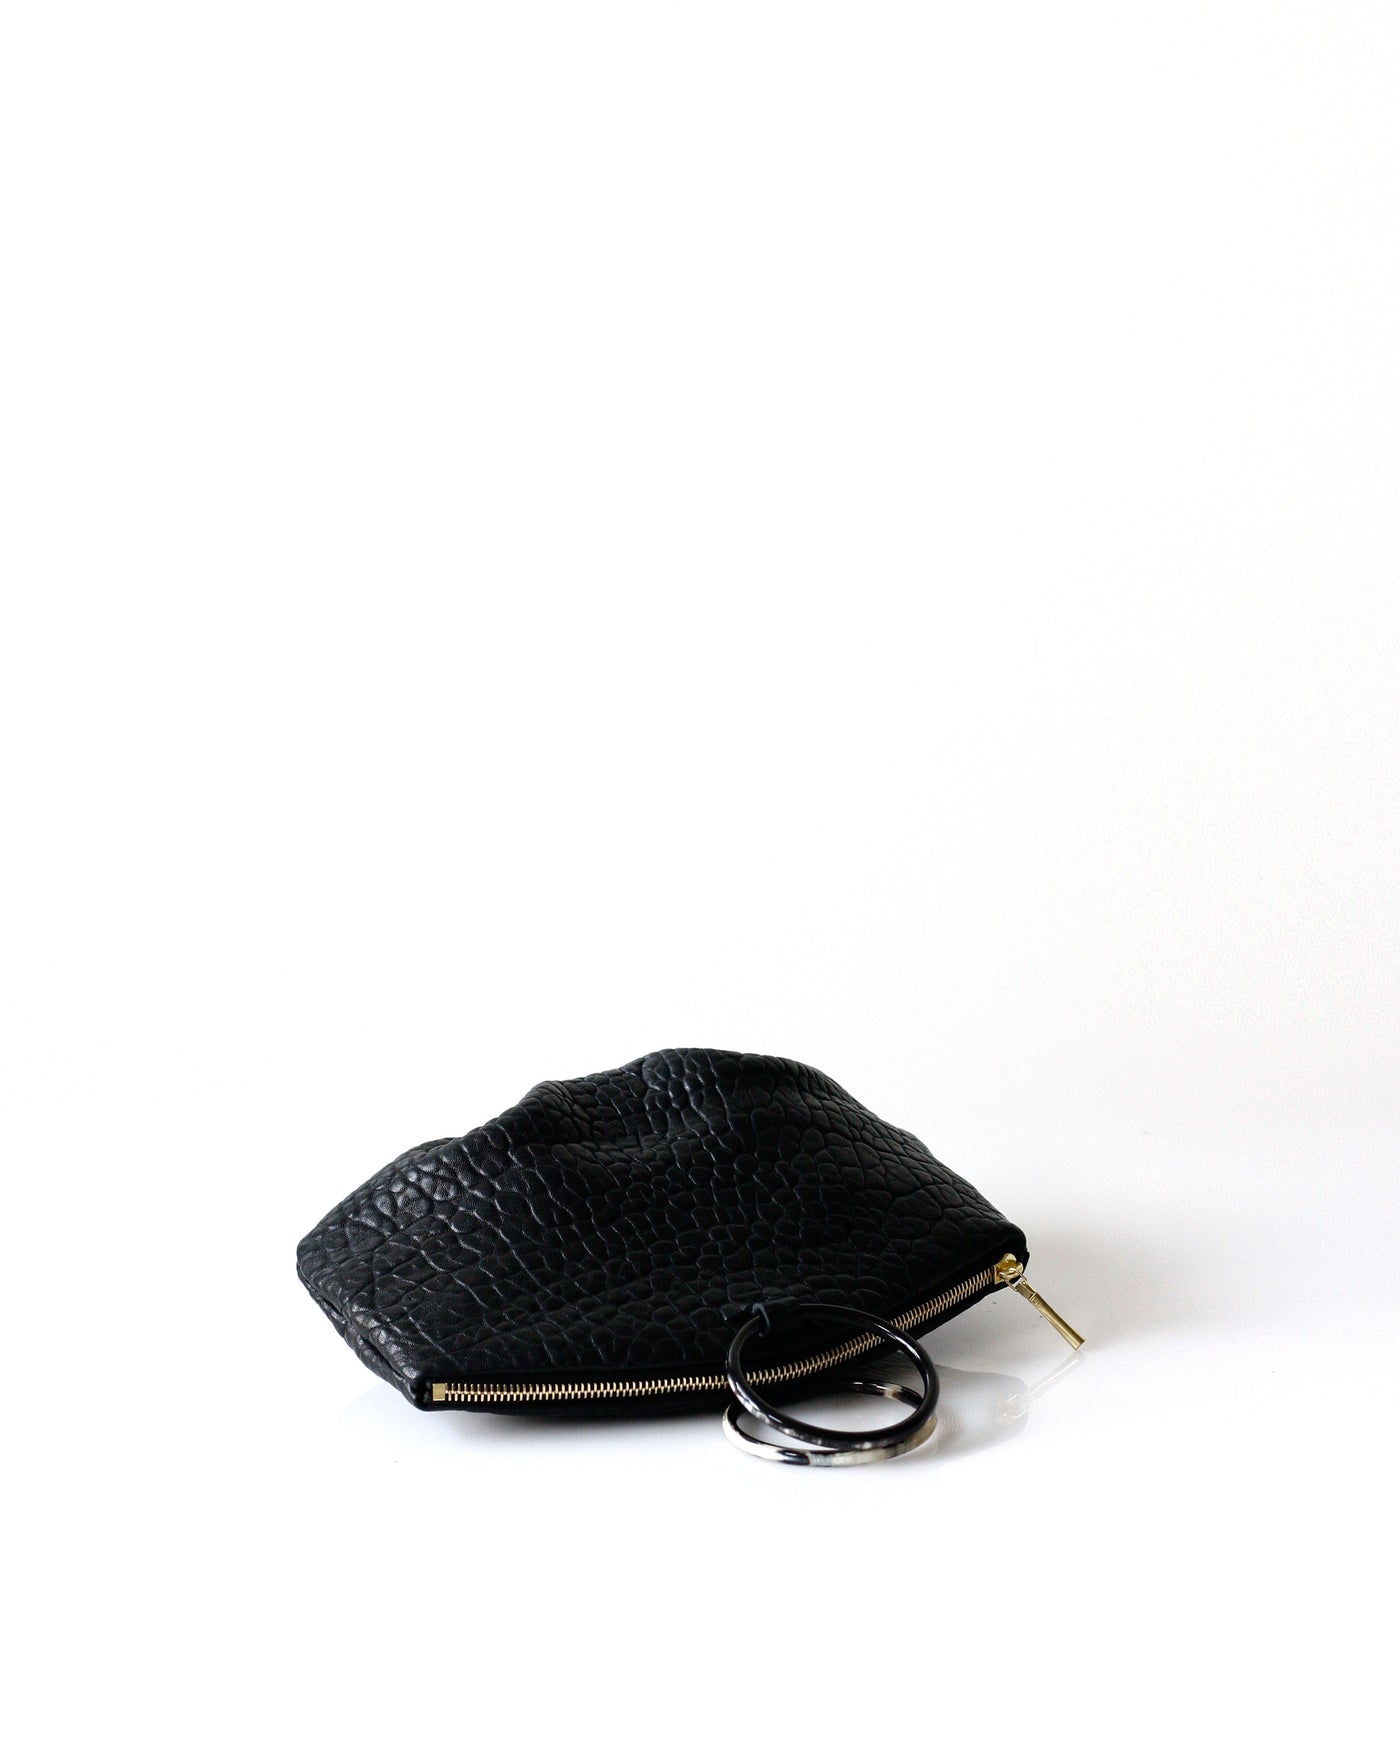 Pochette Horn Ring | Shrunken Lamb - Opelle bag Shrunken Lamb - Opelle leather handbag handcrafted leather bag toronto Canada